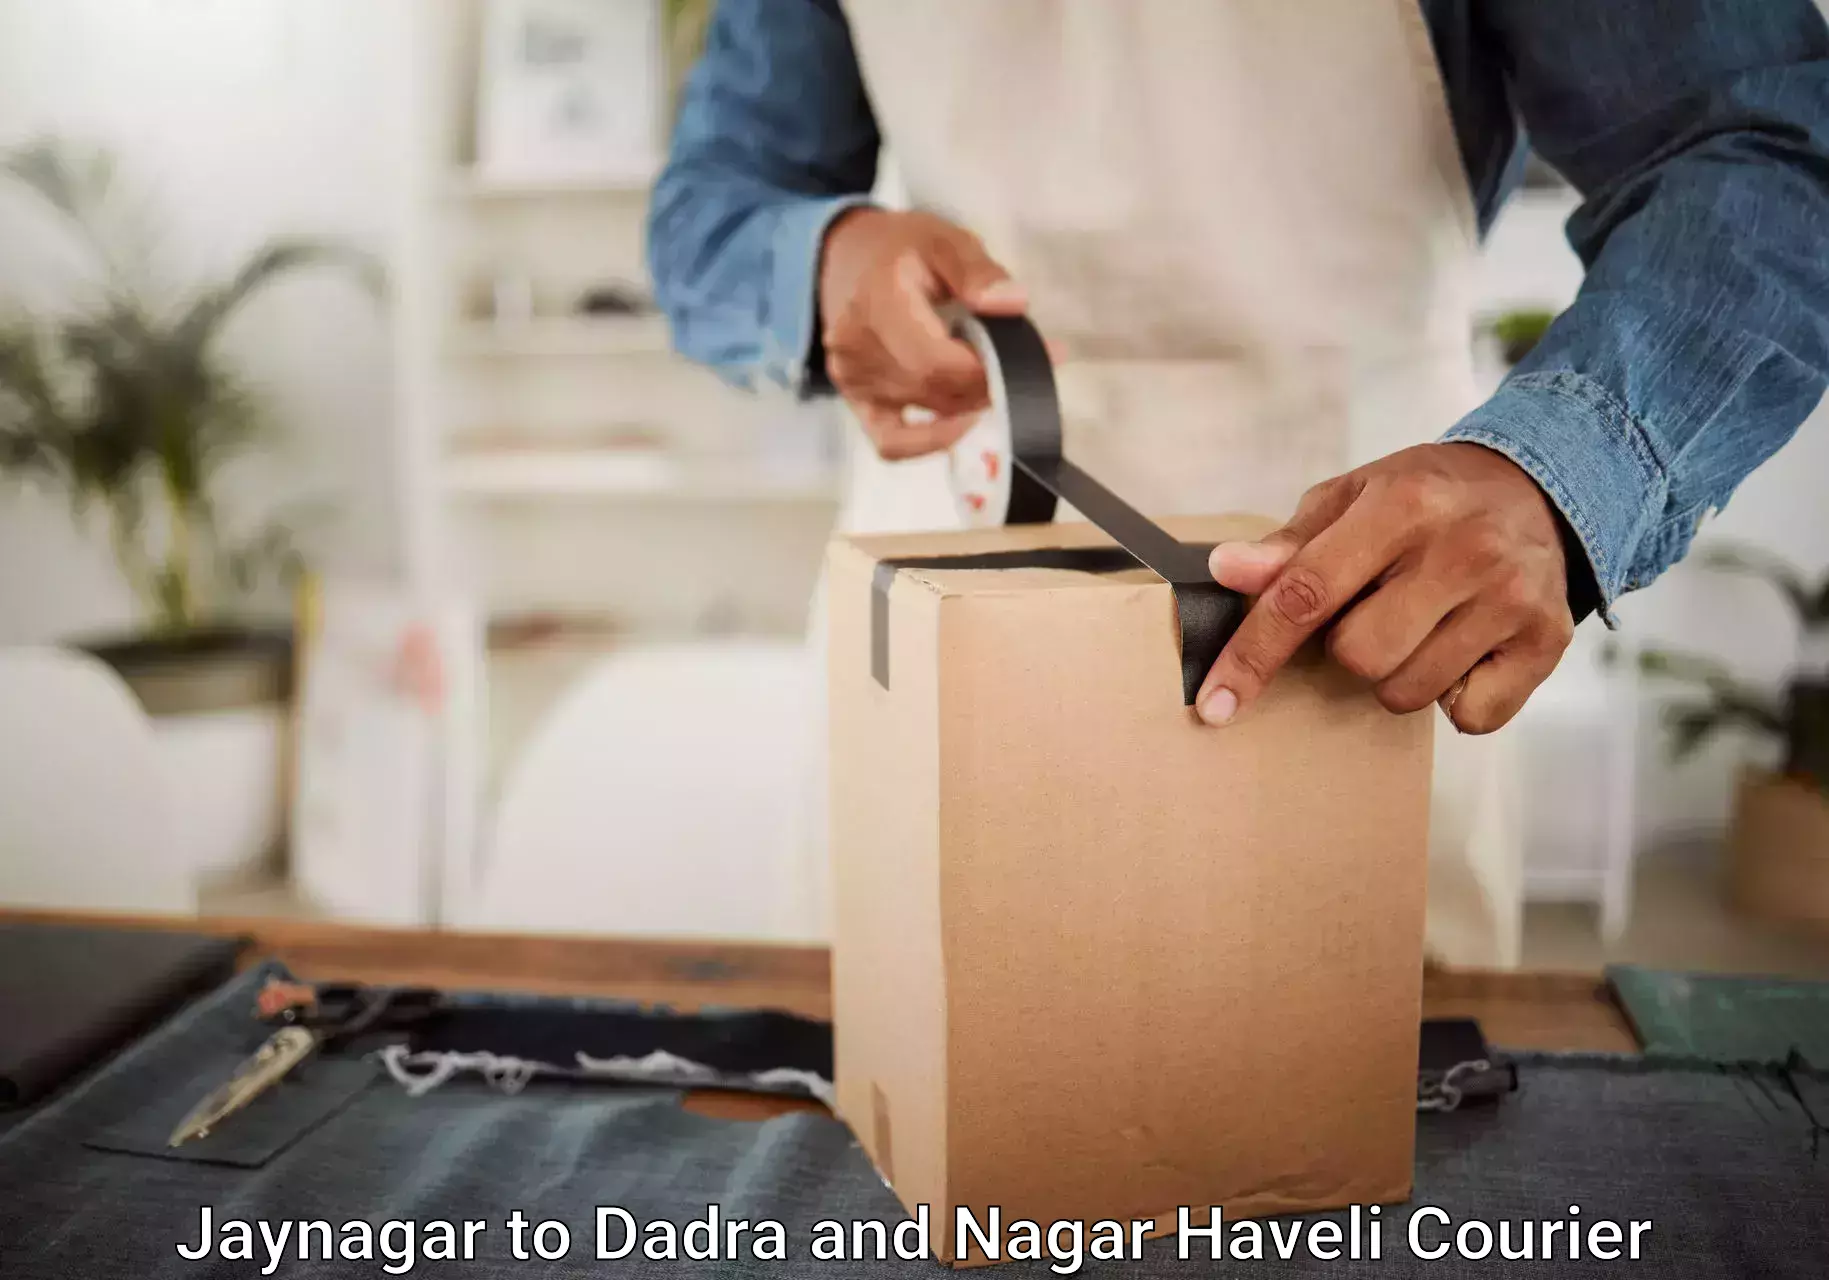 Baggage transport scheduler Jaynagar to Dadra and Nagar Haveli